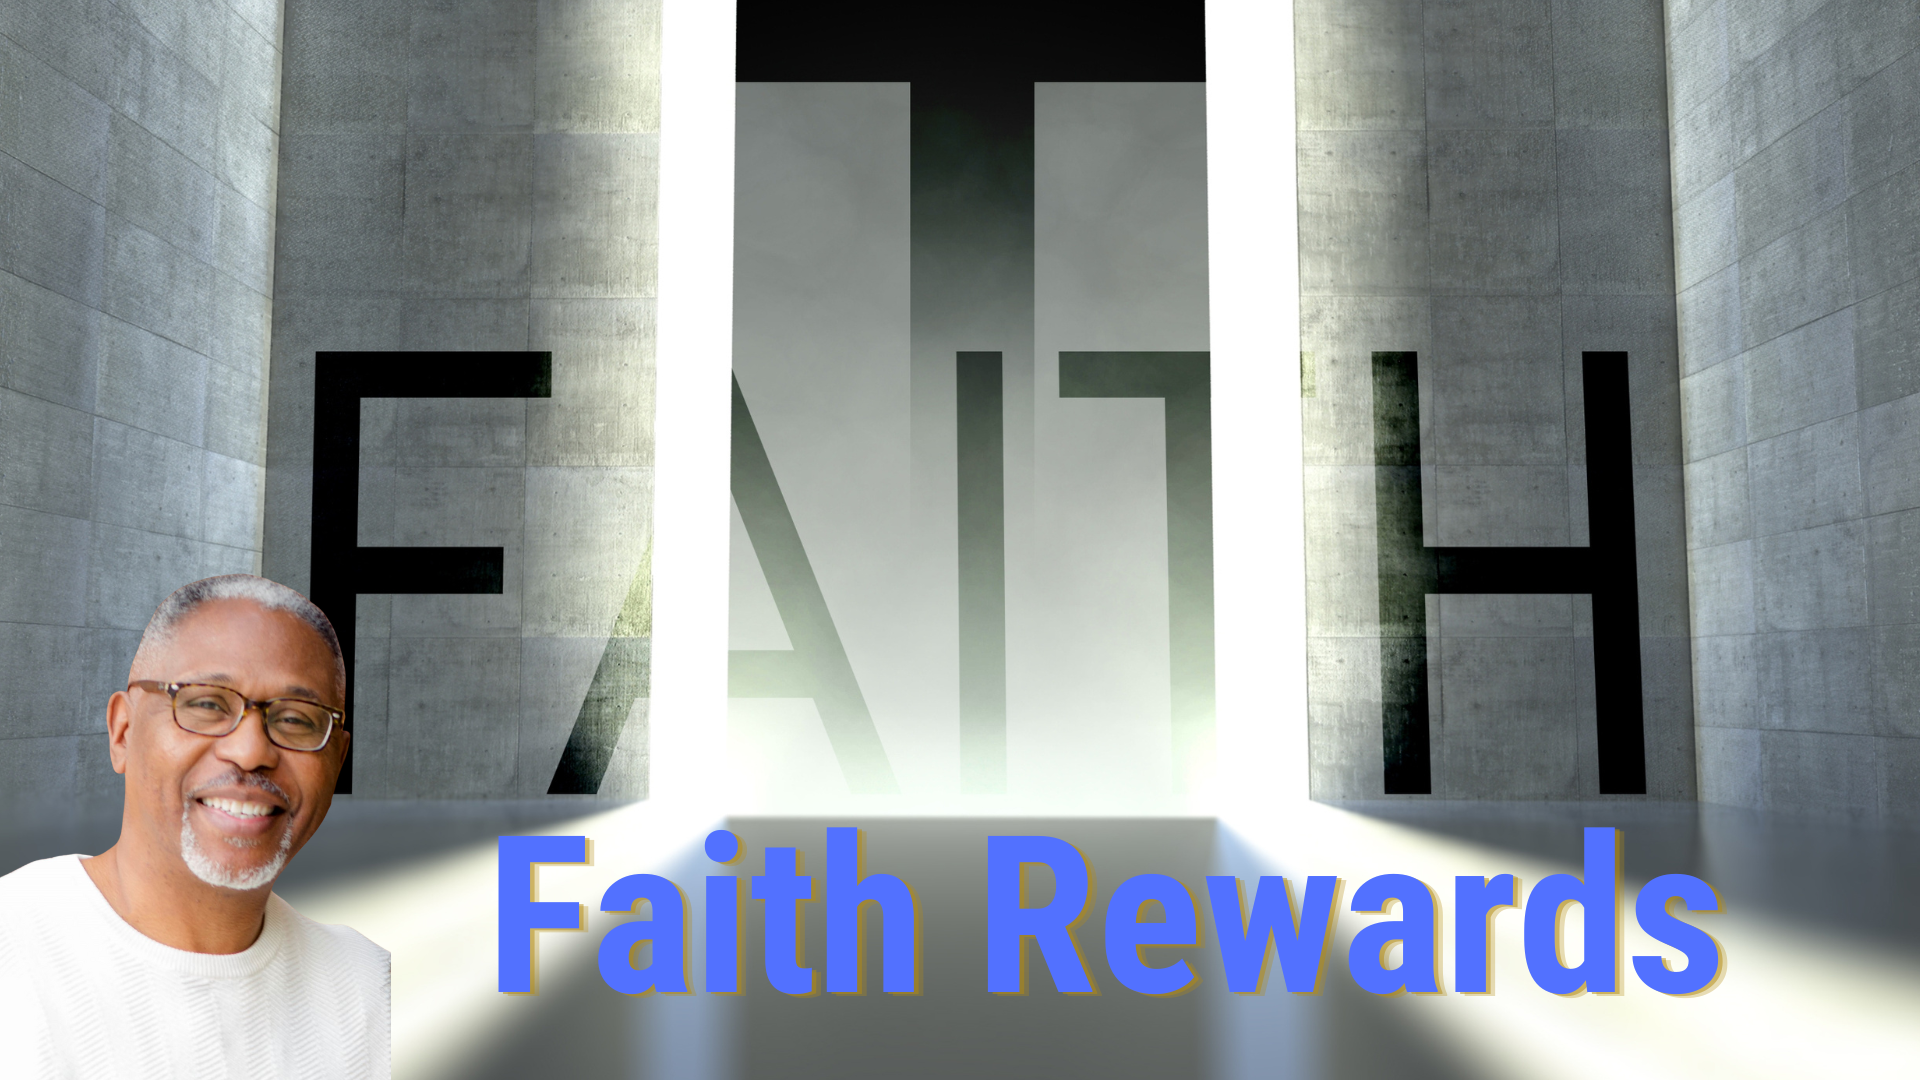 Faith Rewards head image